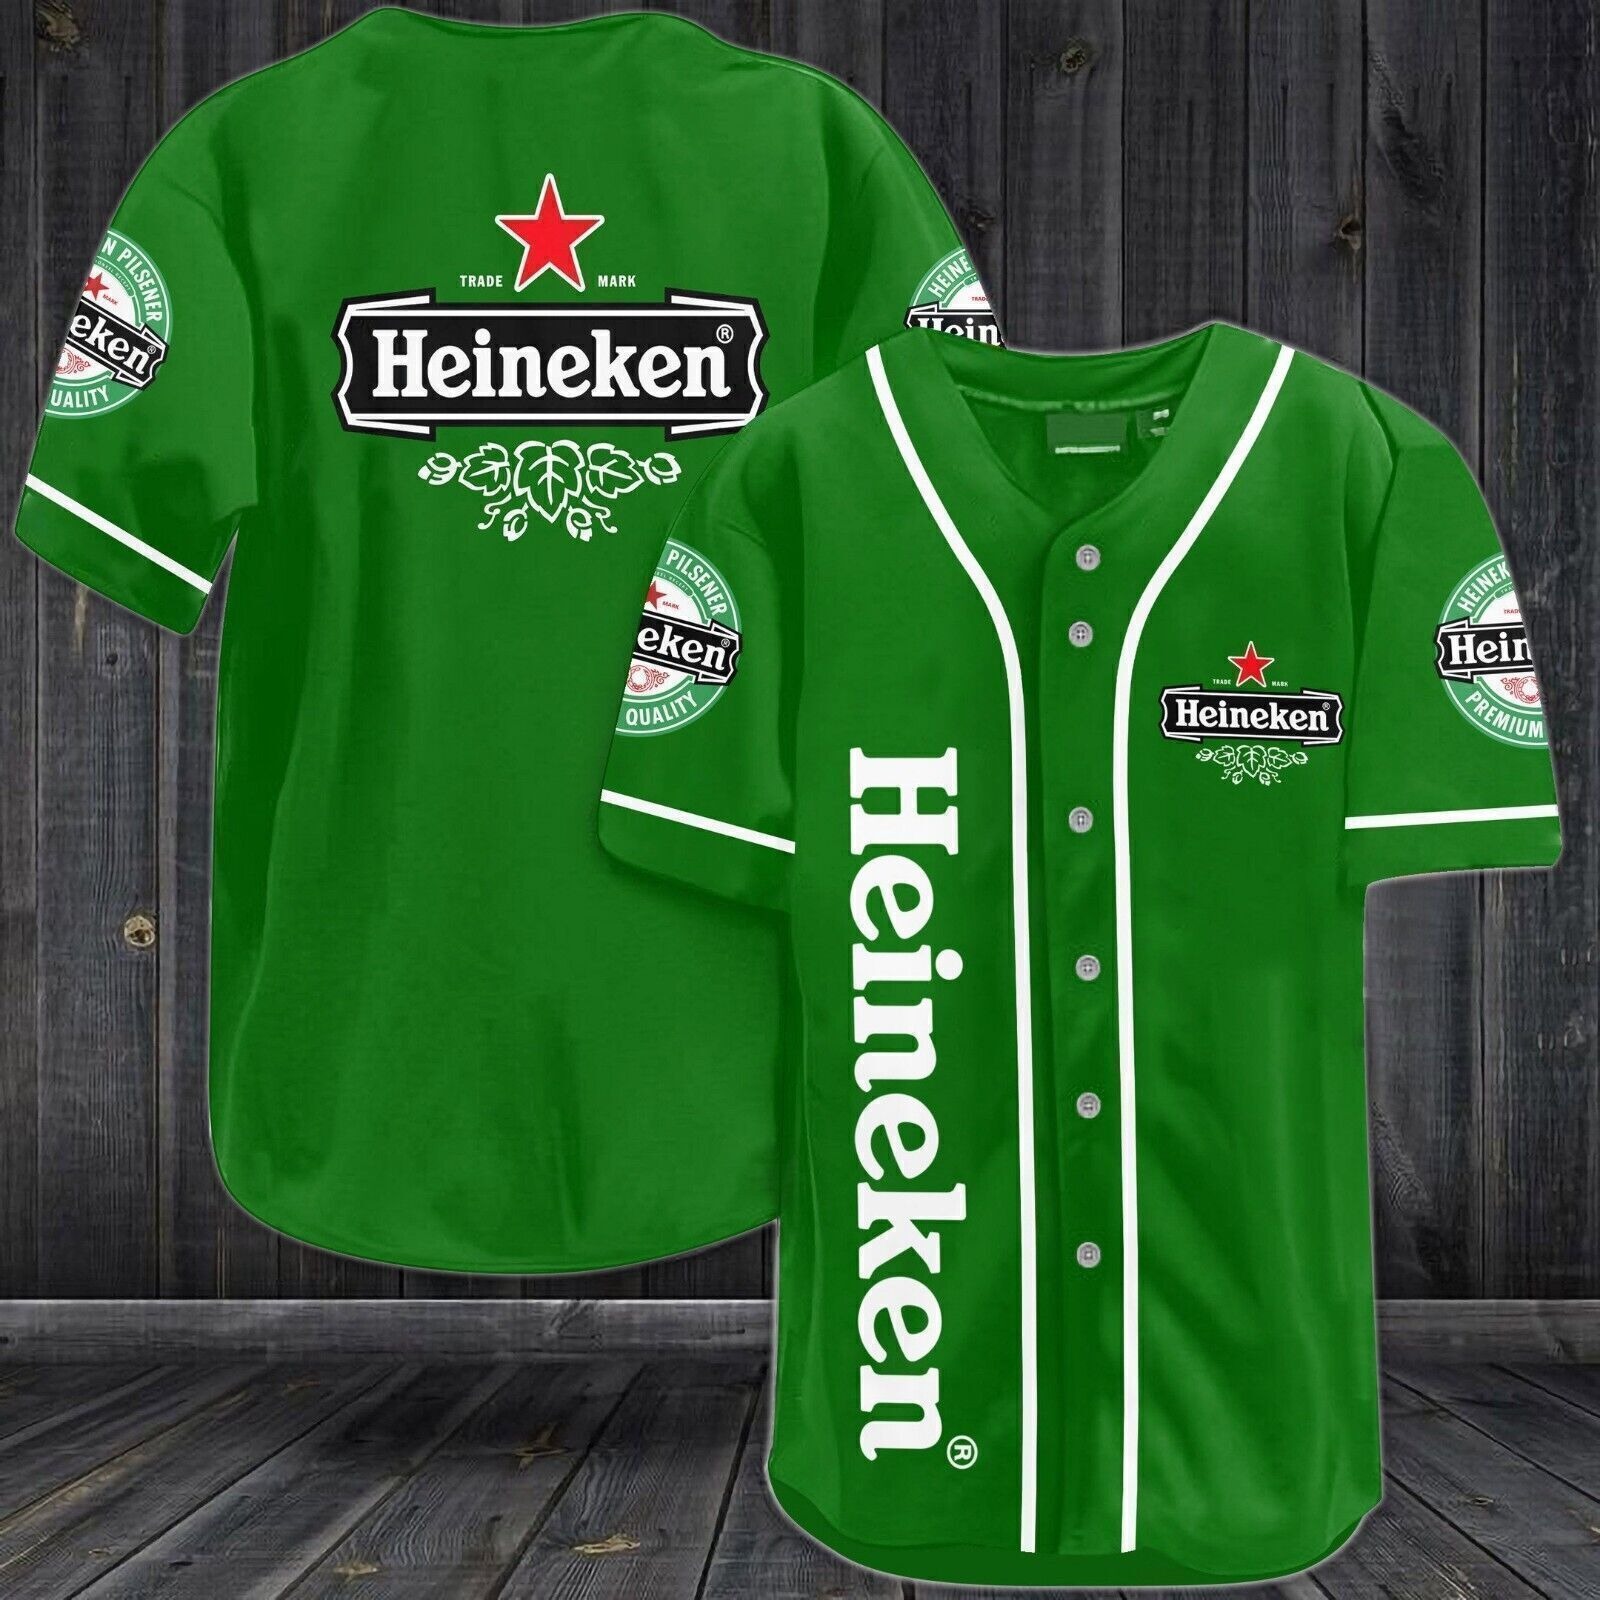 Personalized Green Heineken Beer Baseball Jersey Shirt